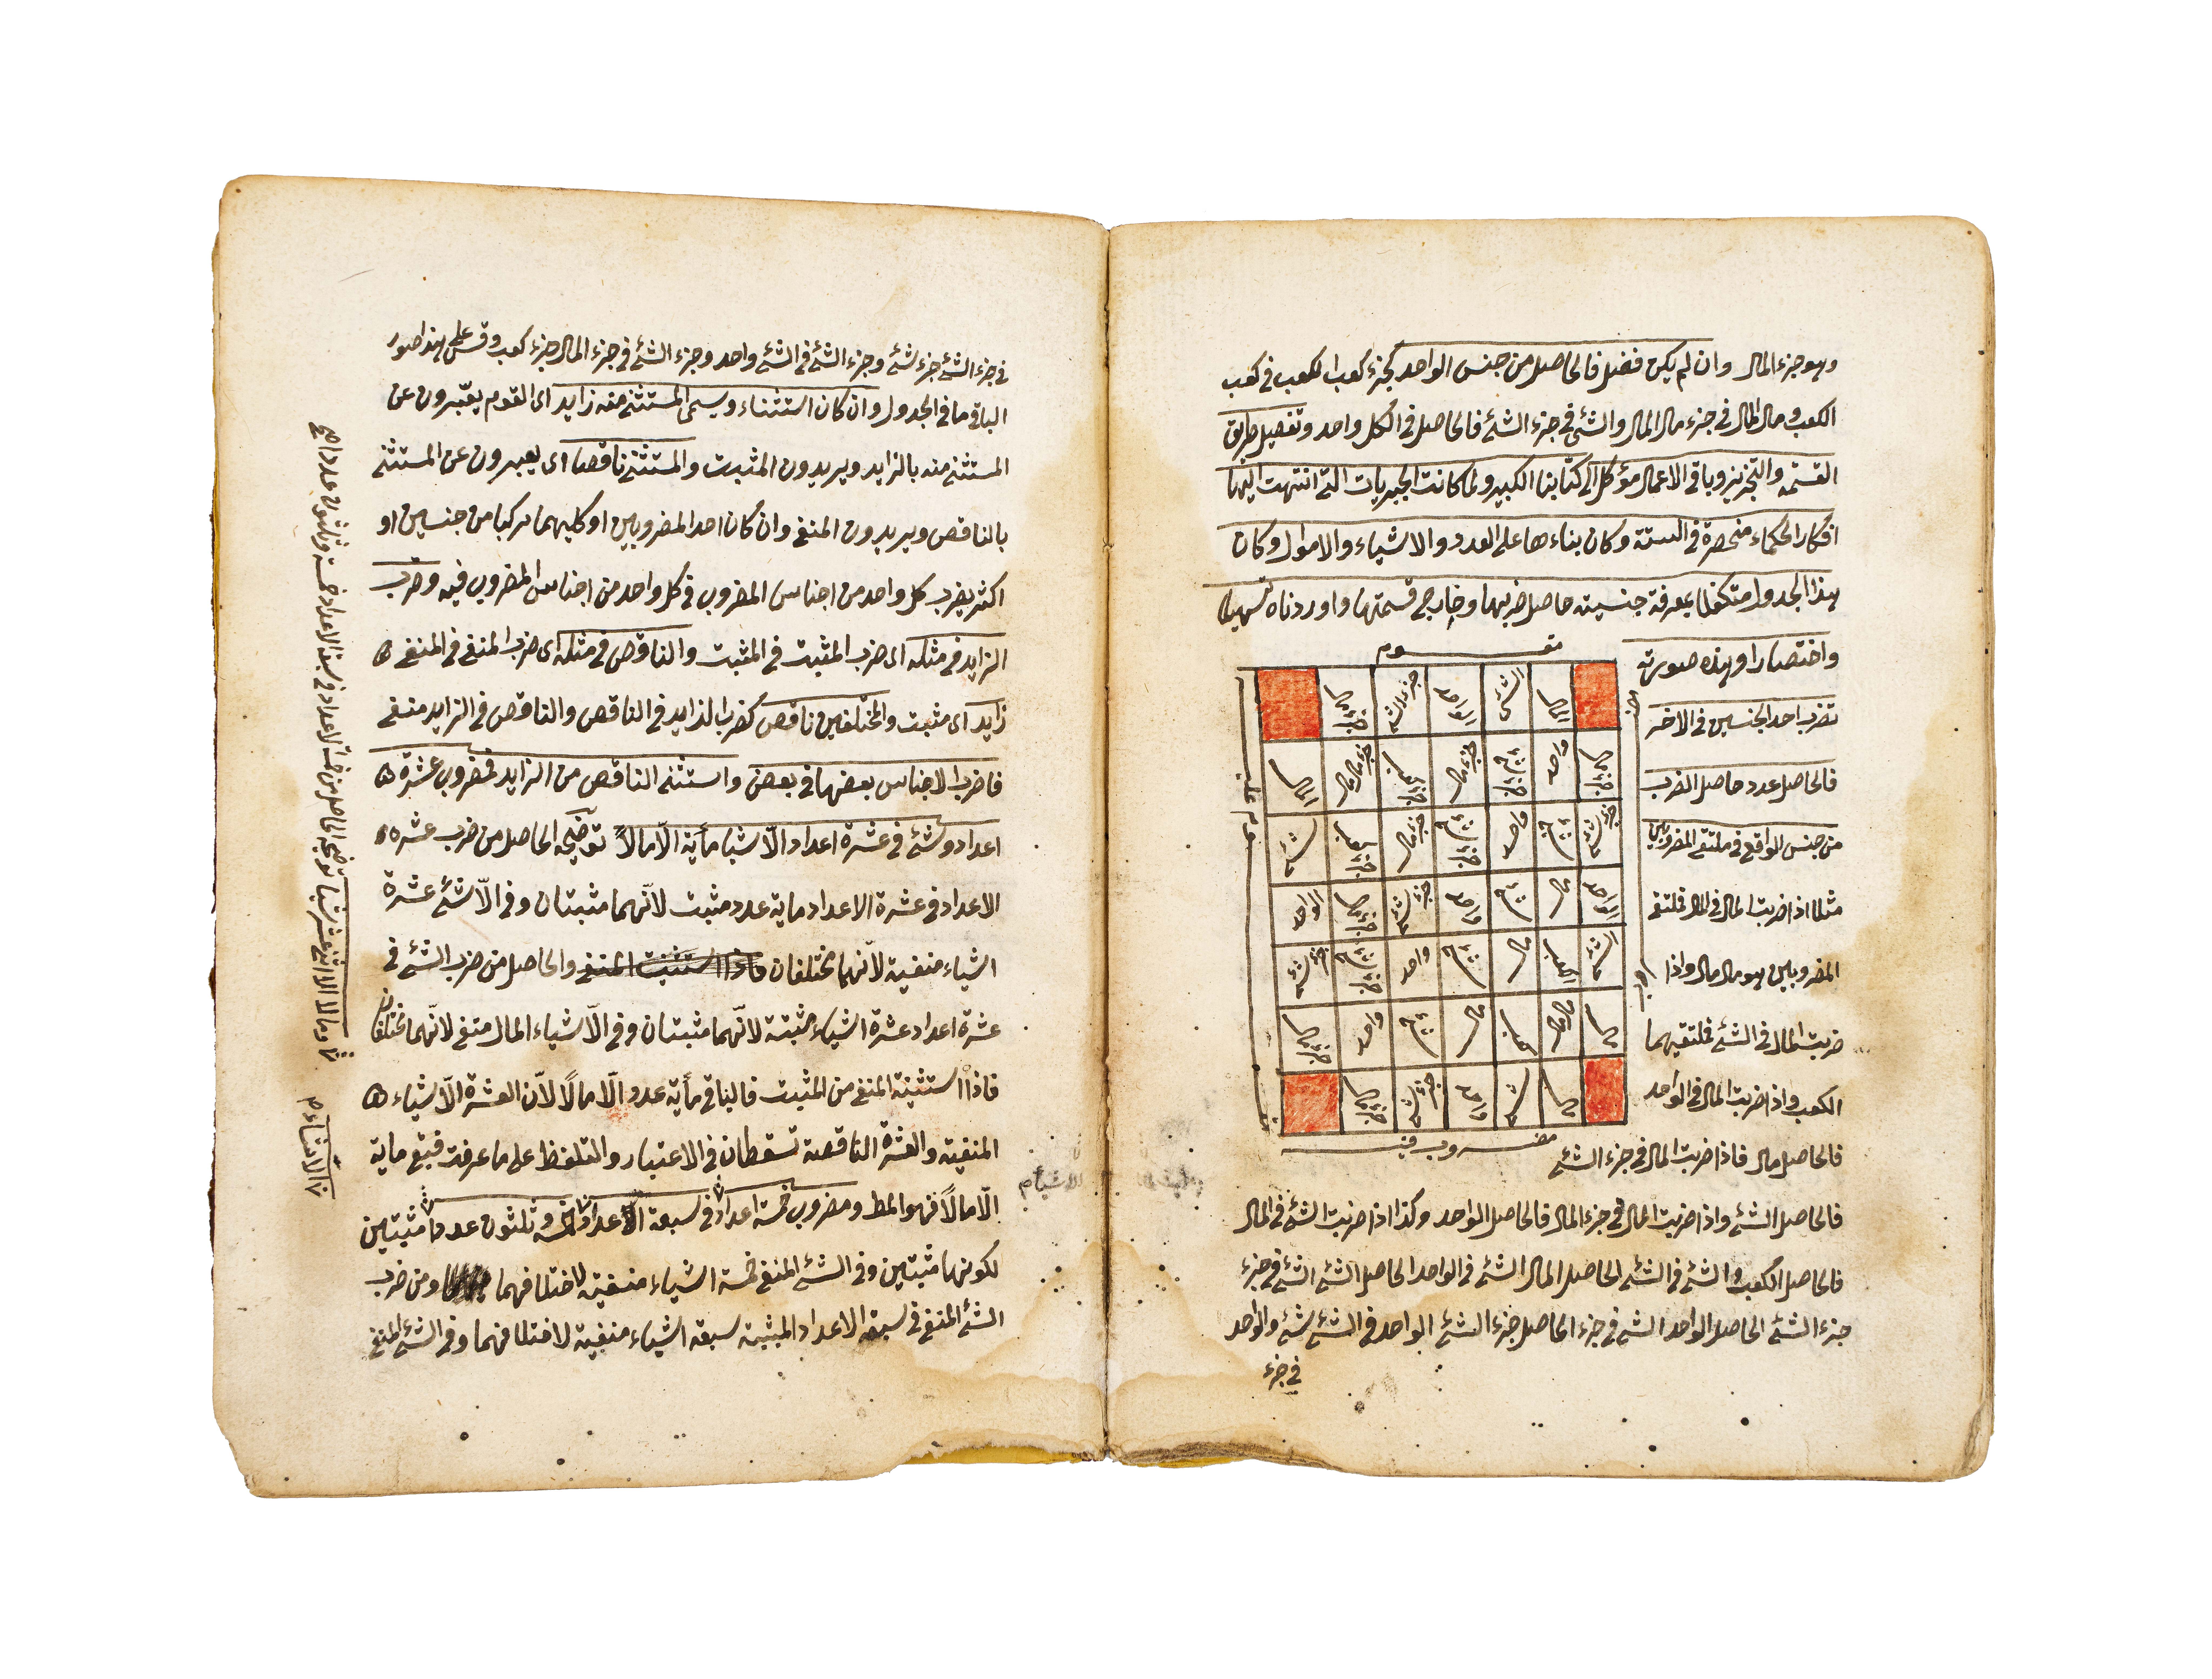 NUZHAT ALEUQUL WA- ALBAB LI MARIFAT AL-HISAB, COPIED BY BARAK BIN MATALK AL-RASHDI IN 1250AH - Image 5 of 7